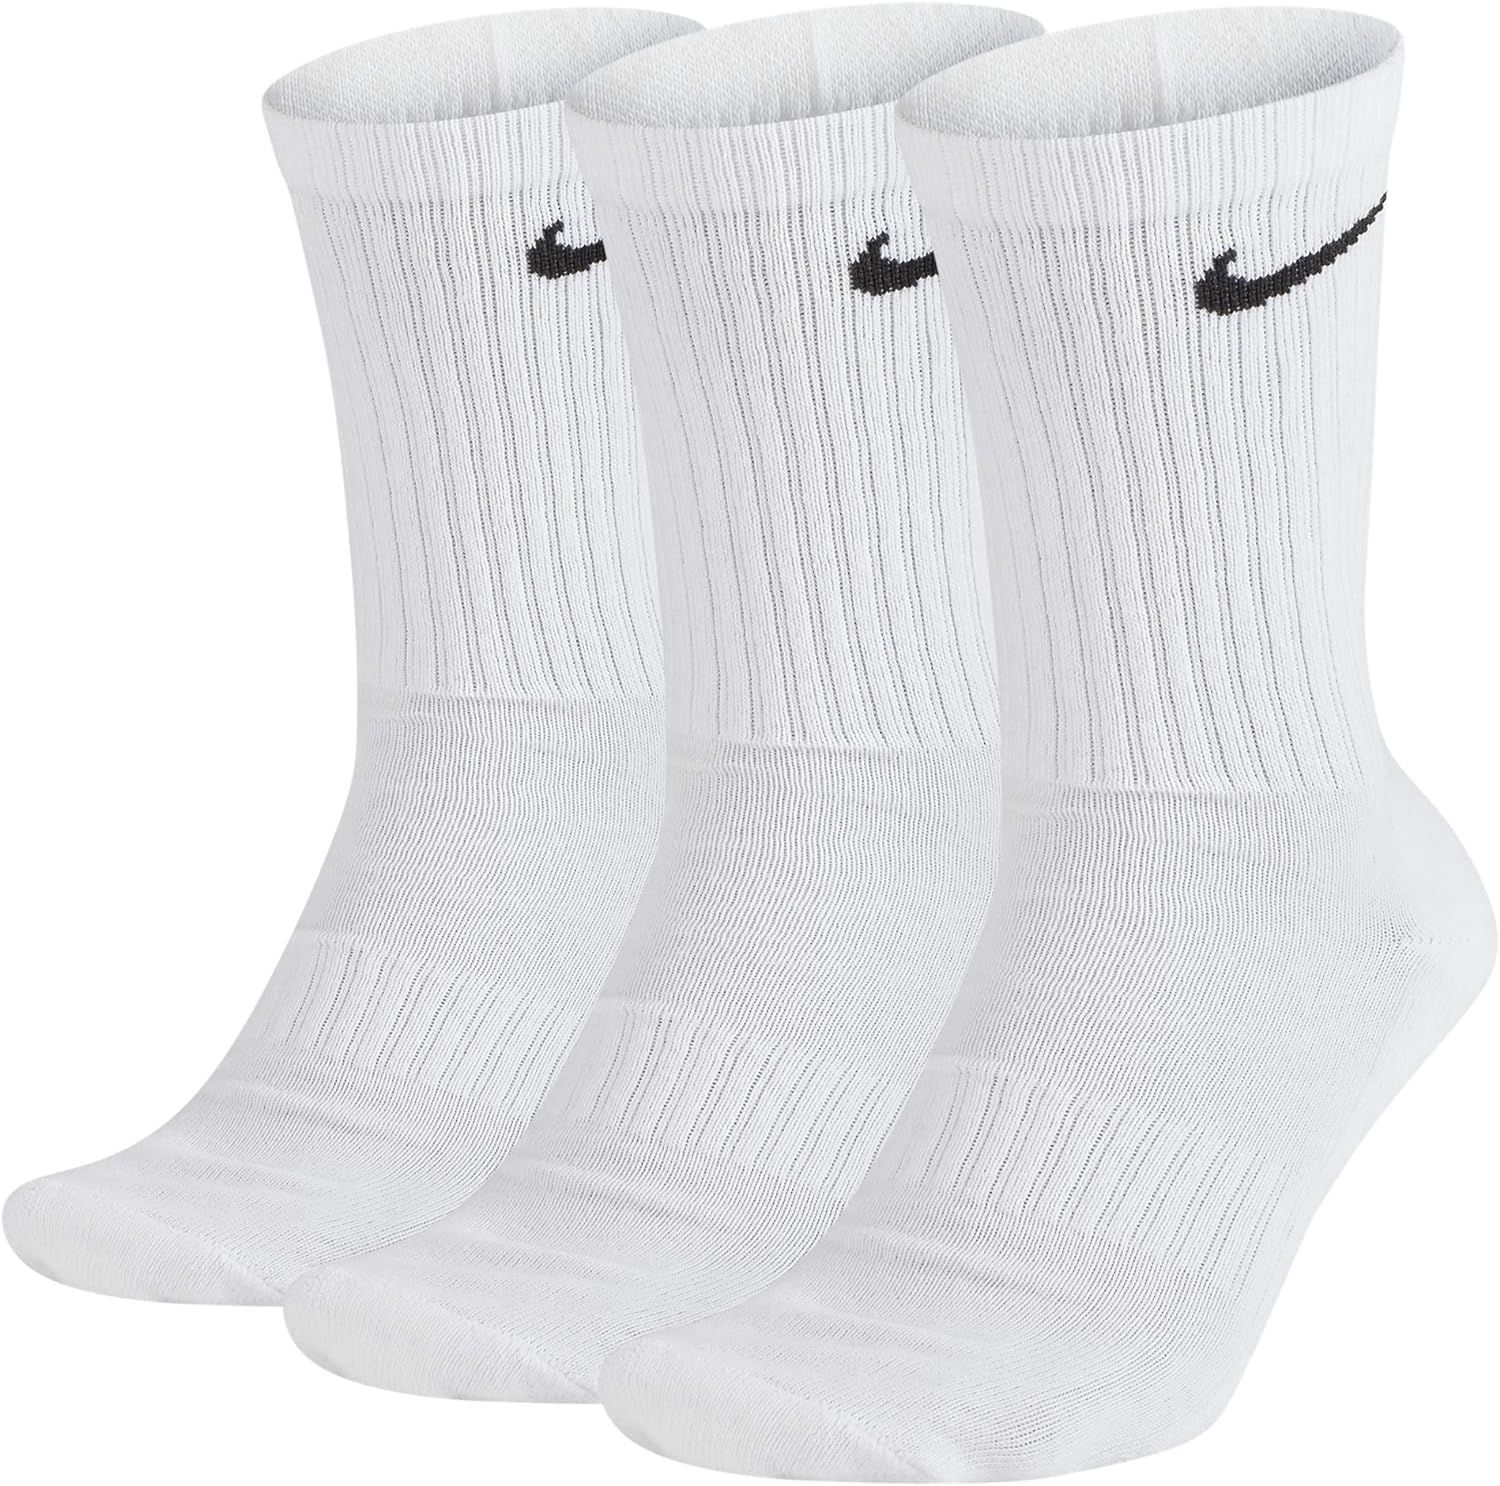 Nike Everyday Cushion Crew Training Socks | Amazon (US)